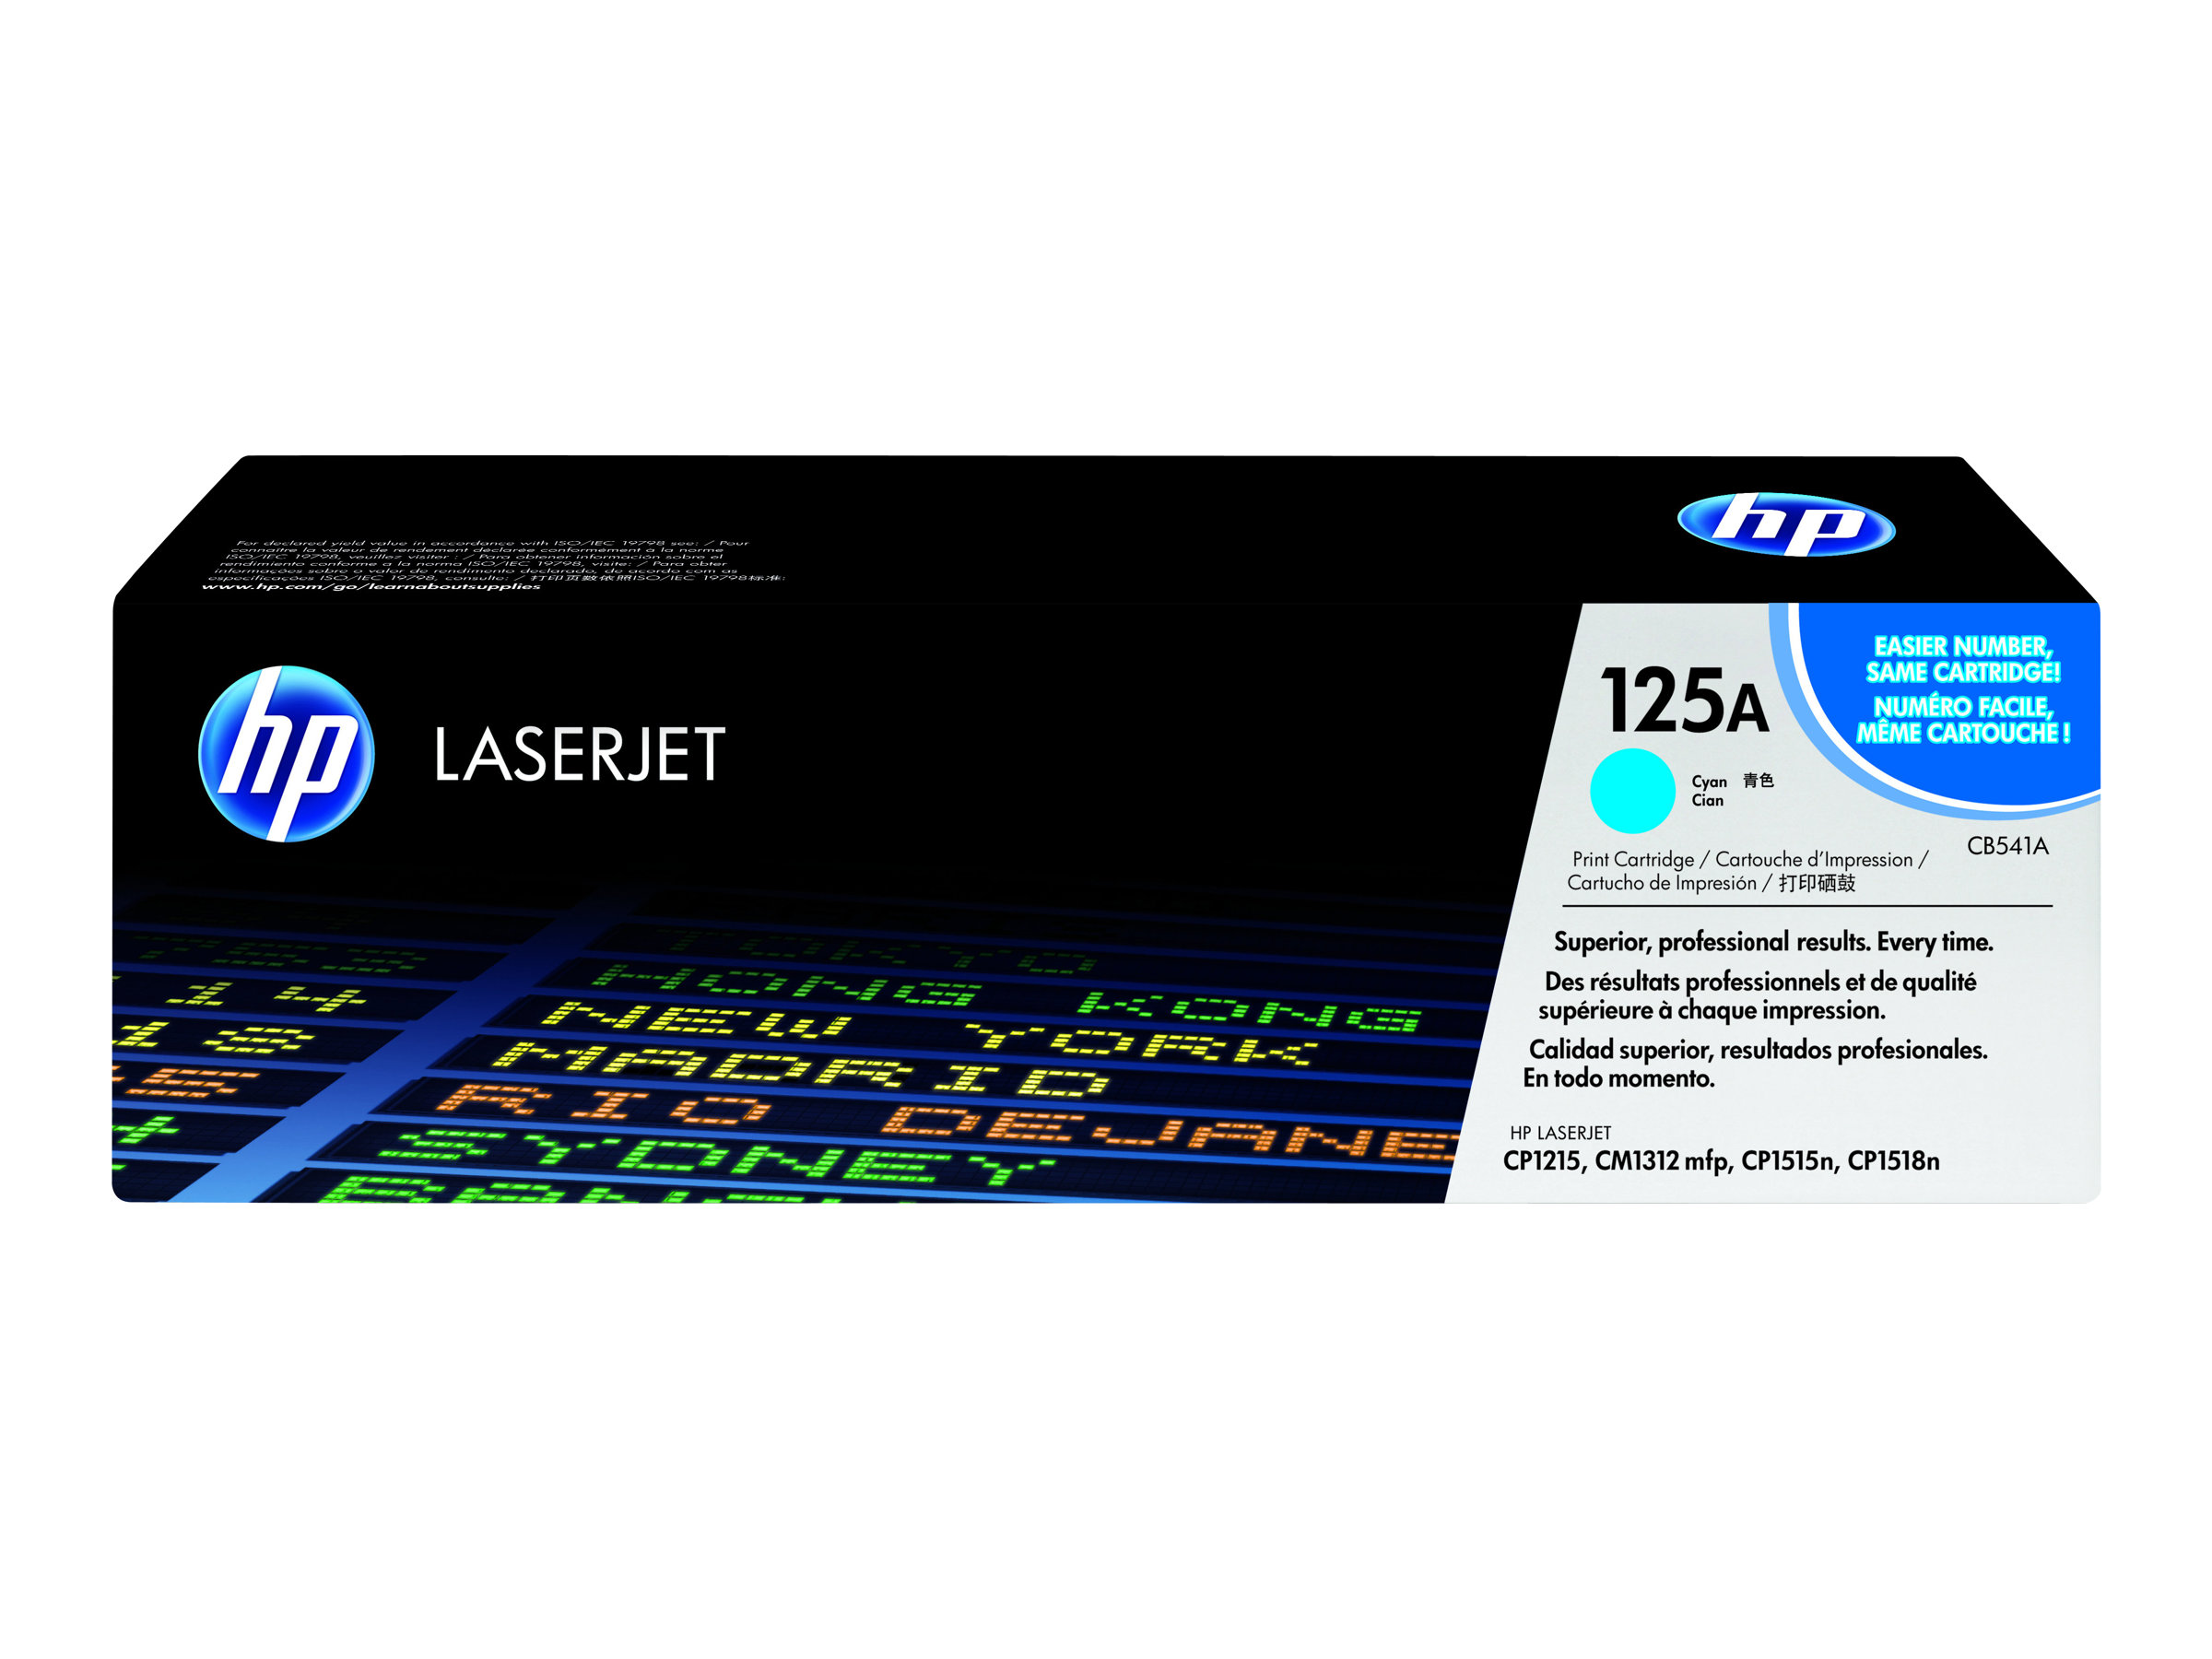 Toner CB541A / cyan / bis zu 1400 Seiten / für HP Color LaserJet CP 1215/ CP 1515/ CP 1518